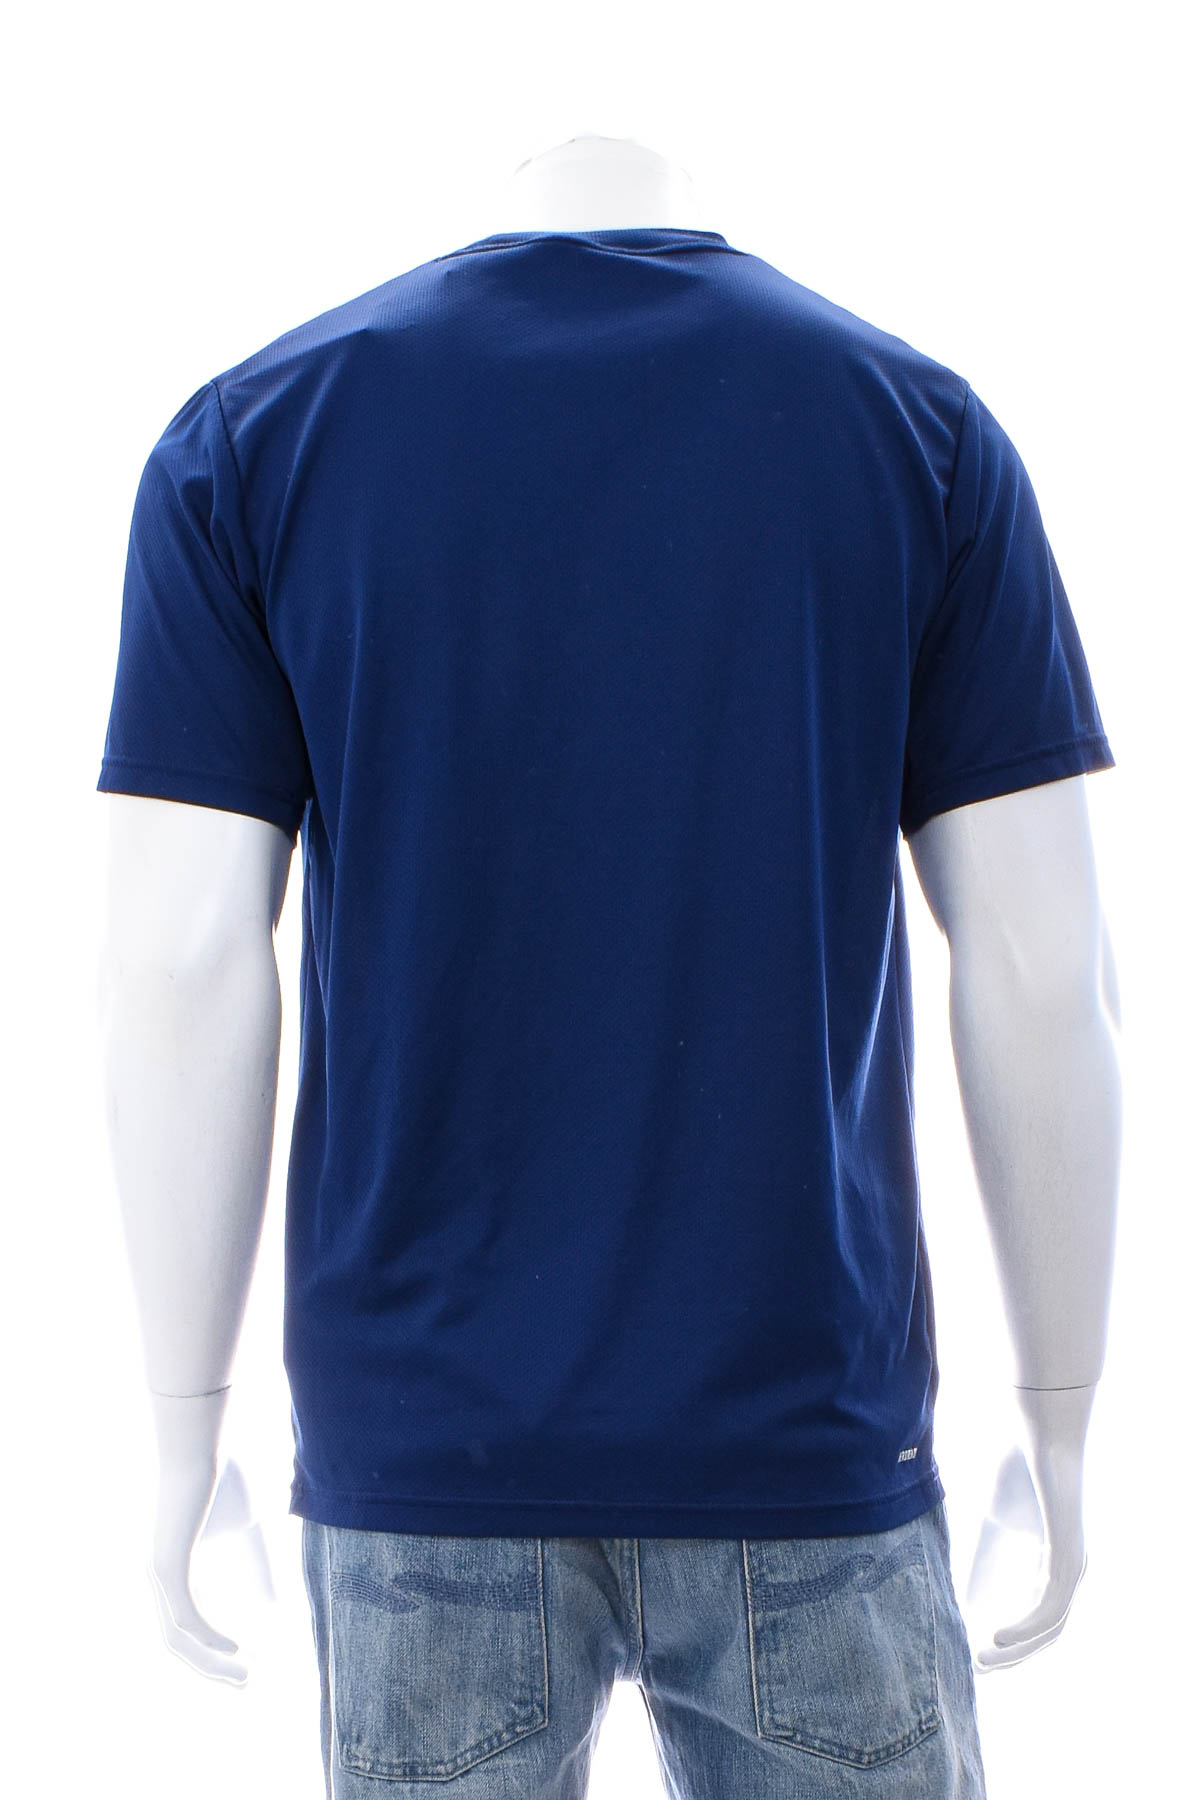 Αντρική μπλούζα - Adidas - 1